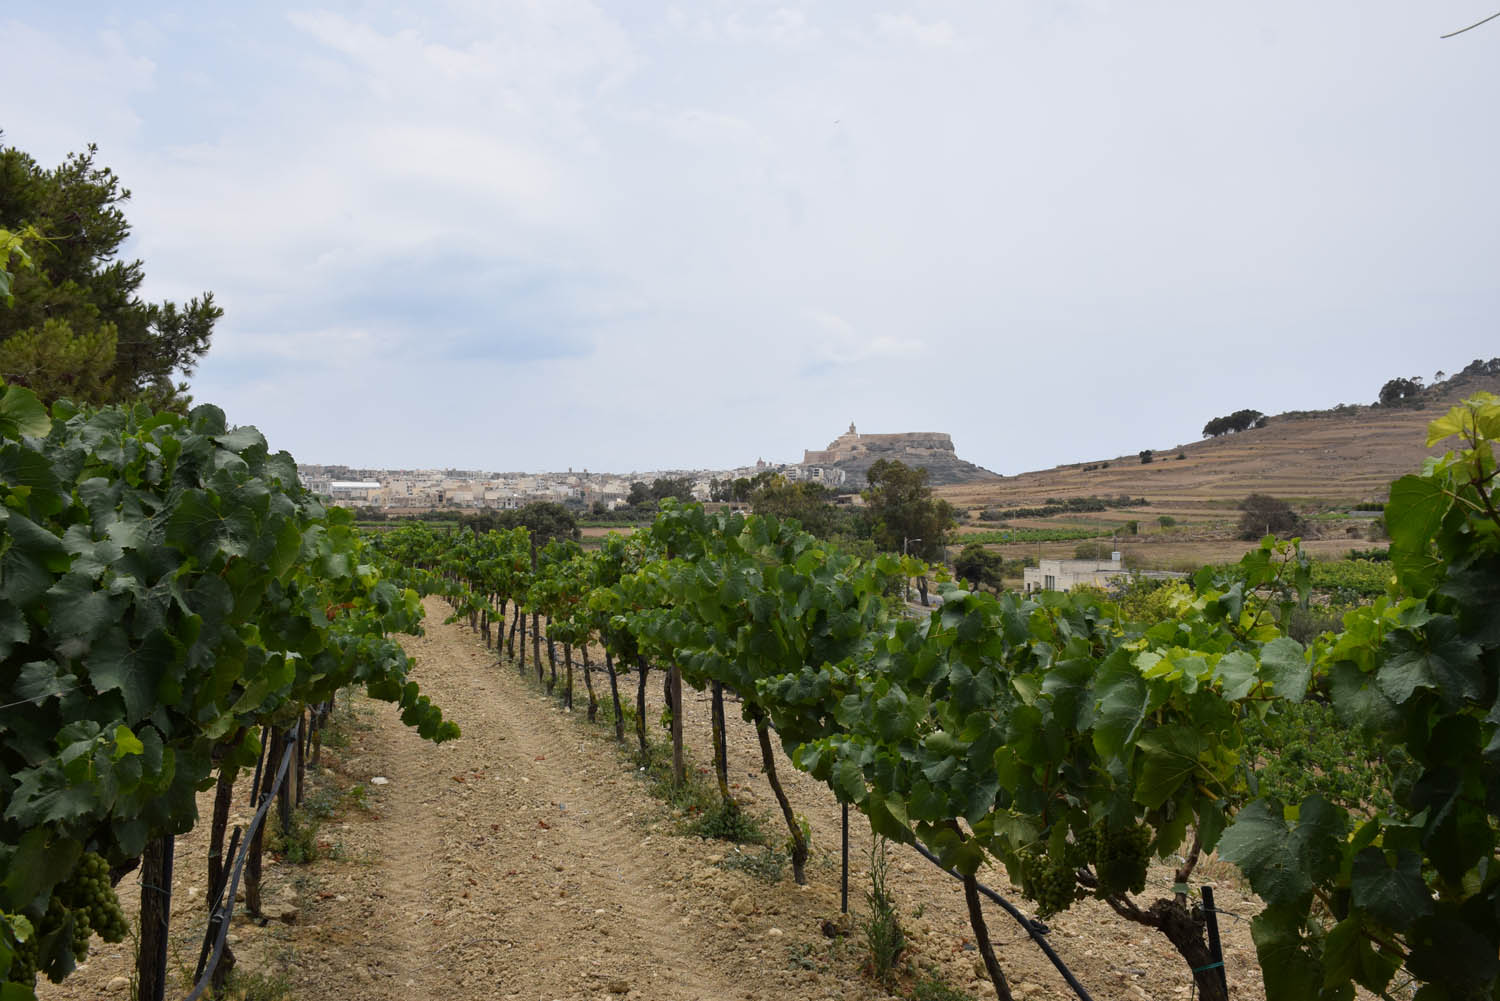 Nos vinhedos da Ta' Mena Estate com vista para a Cittadella de Gozo, Malta